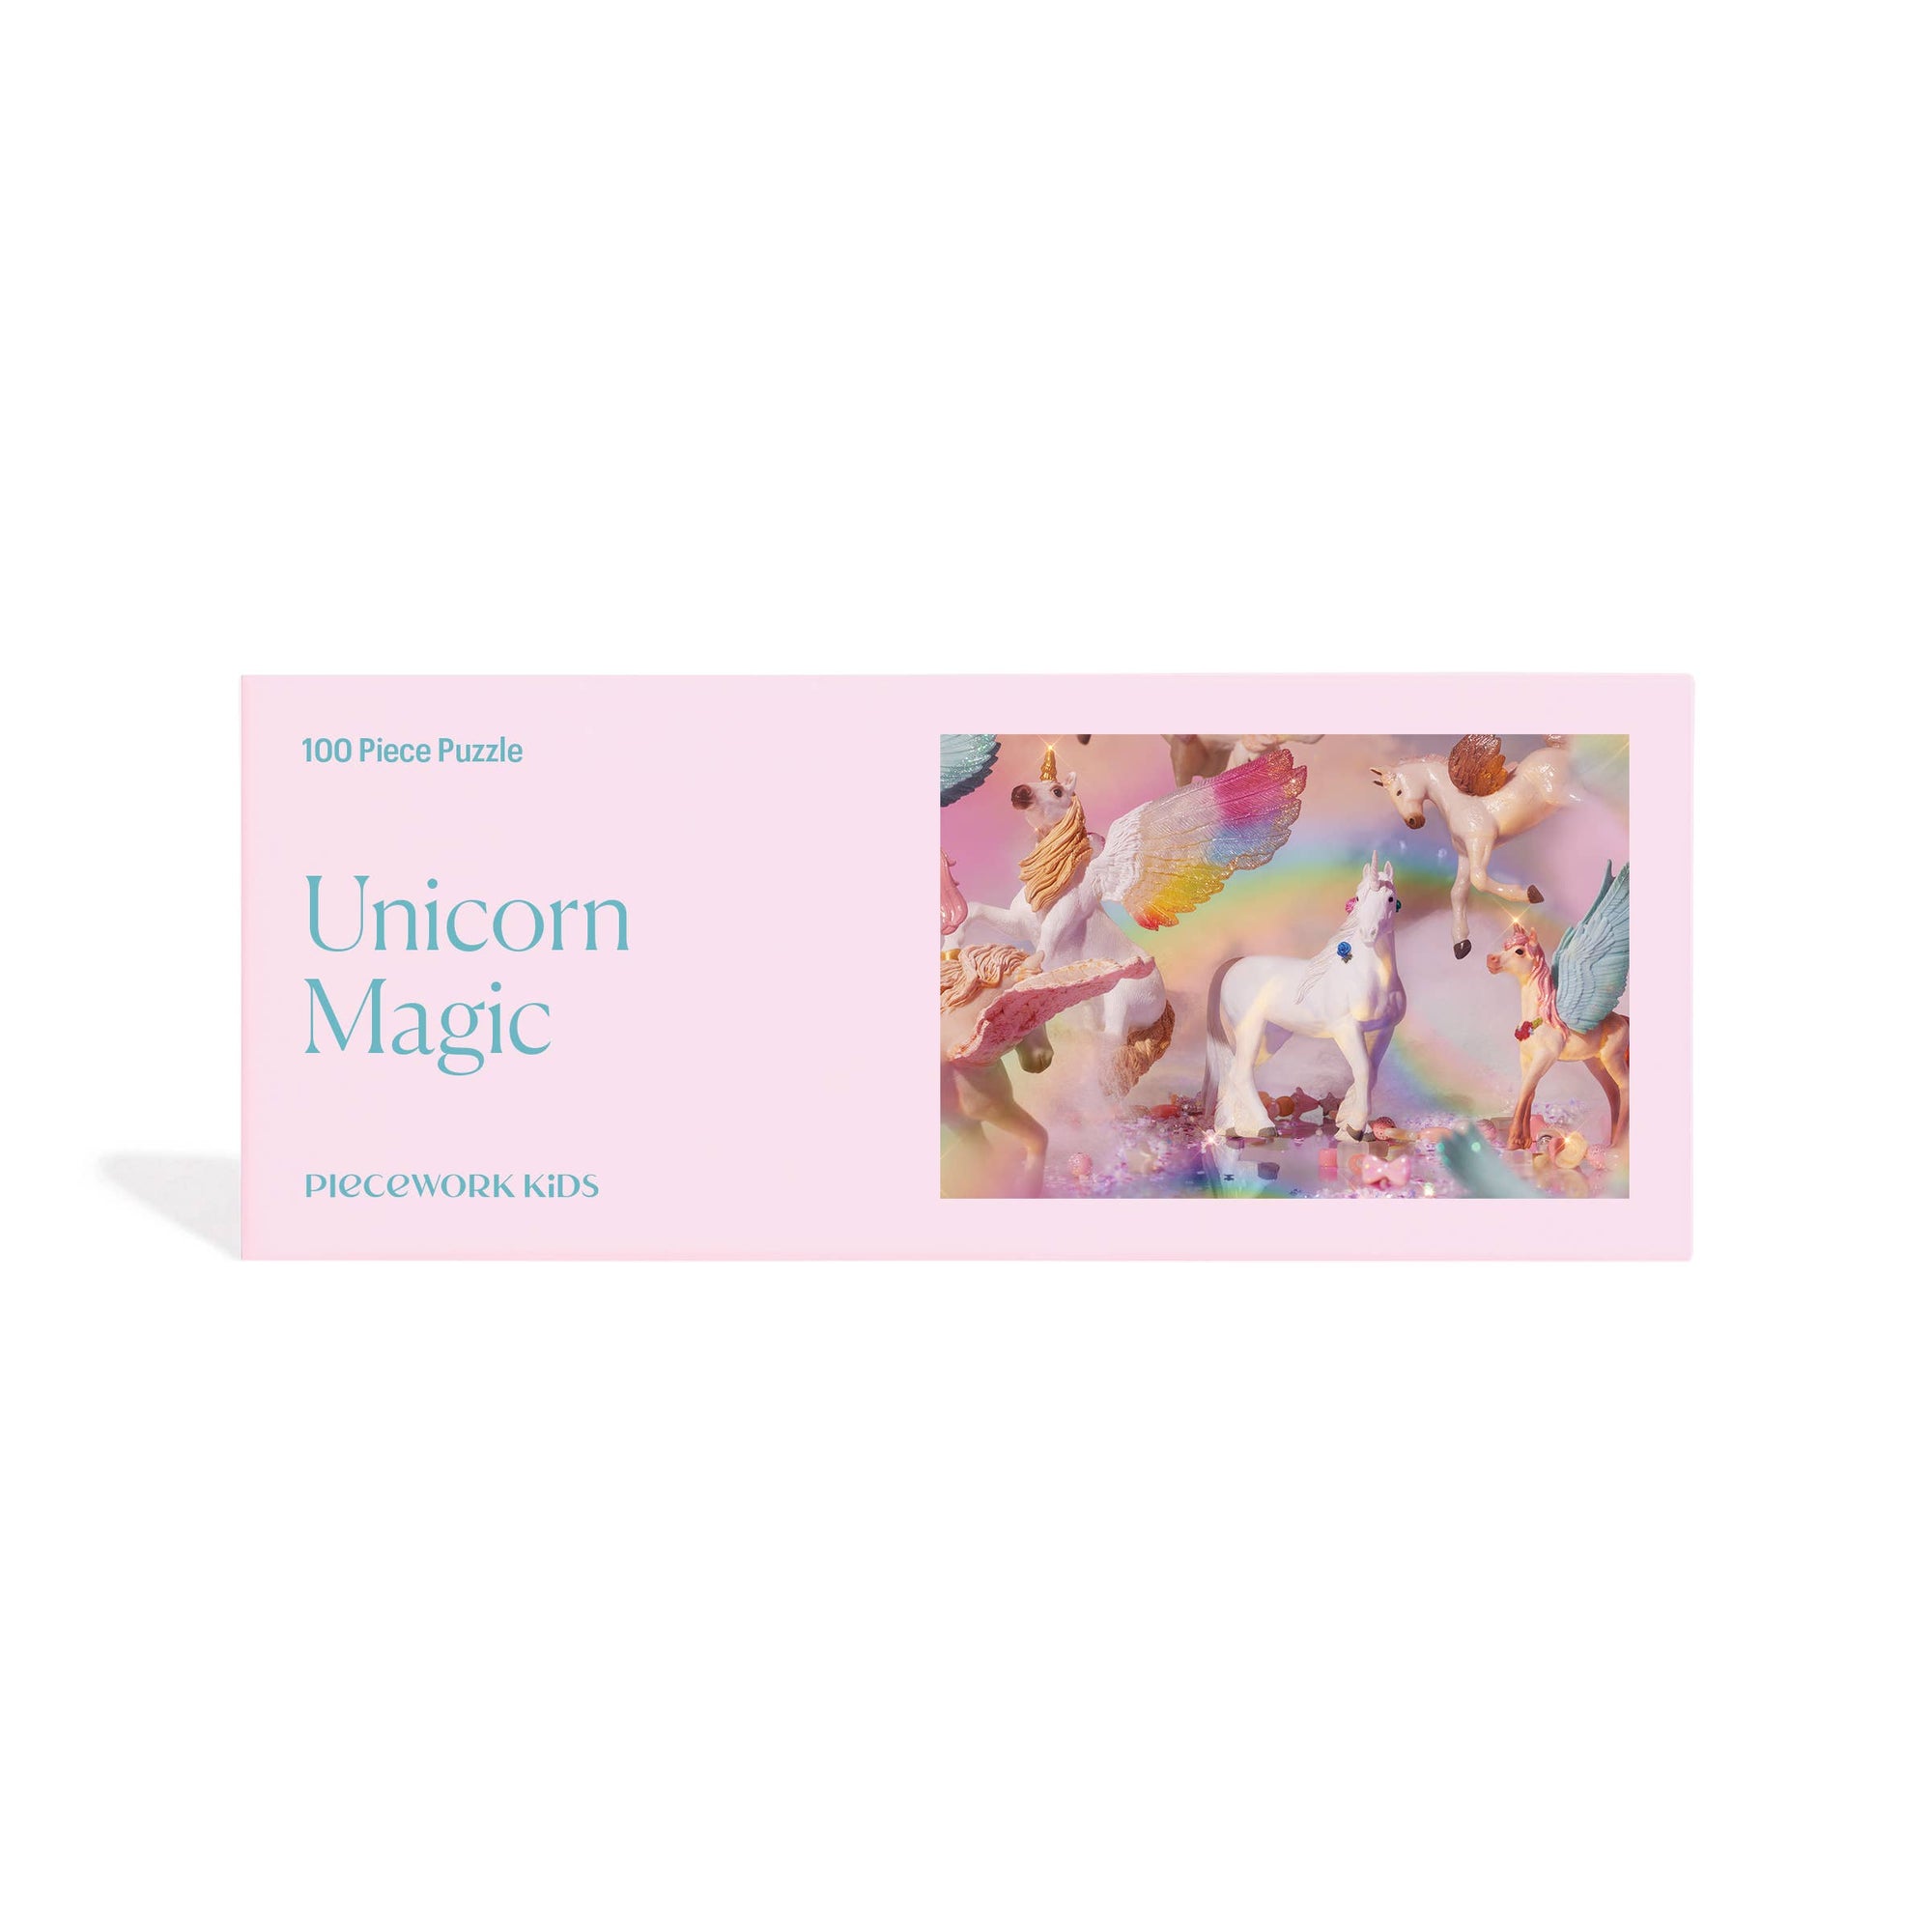 100 Piece Puzzle | Unicorn Magic 🦄  | Piecework Puzzles